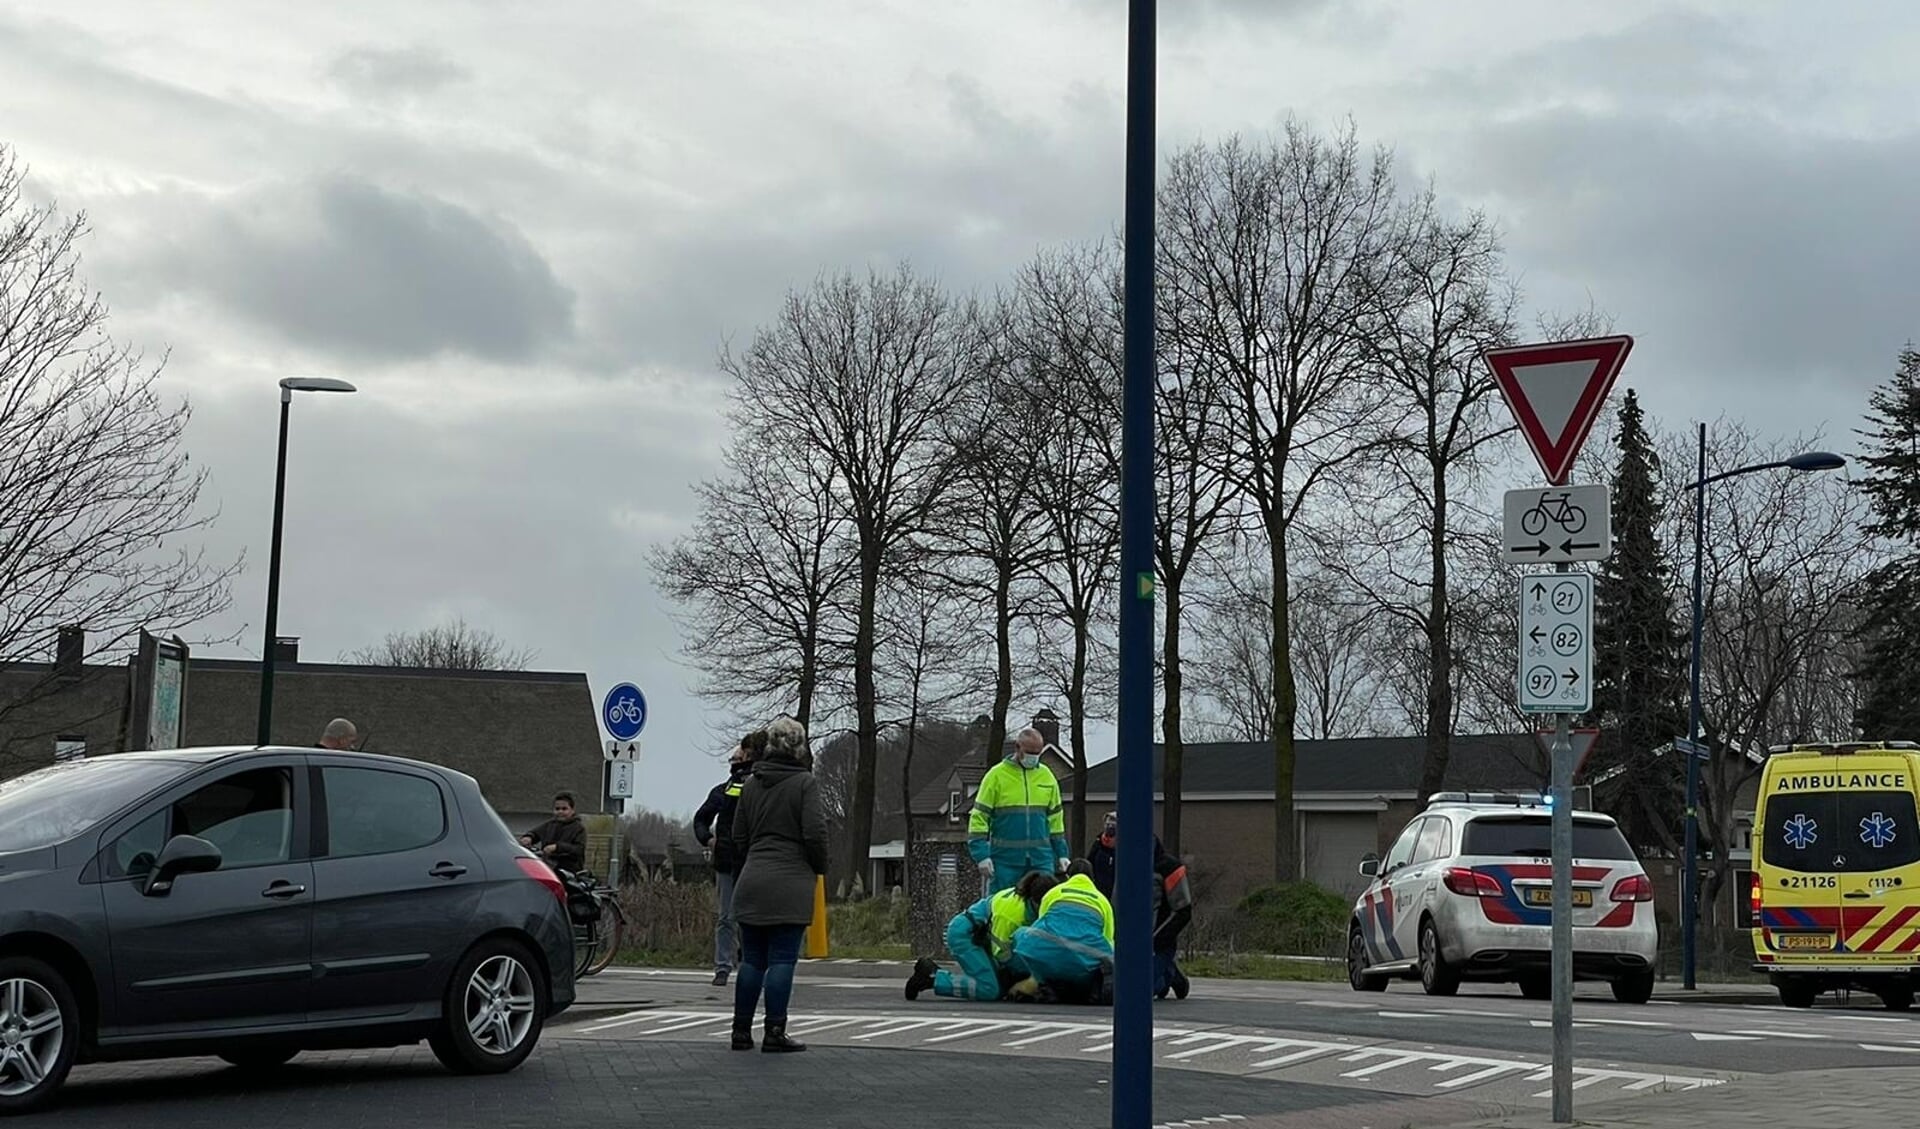 Afgelopen zondag kwamen een fietser en een automobilist in botsing op deze in Veghel beruchte kruising.